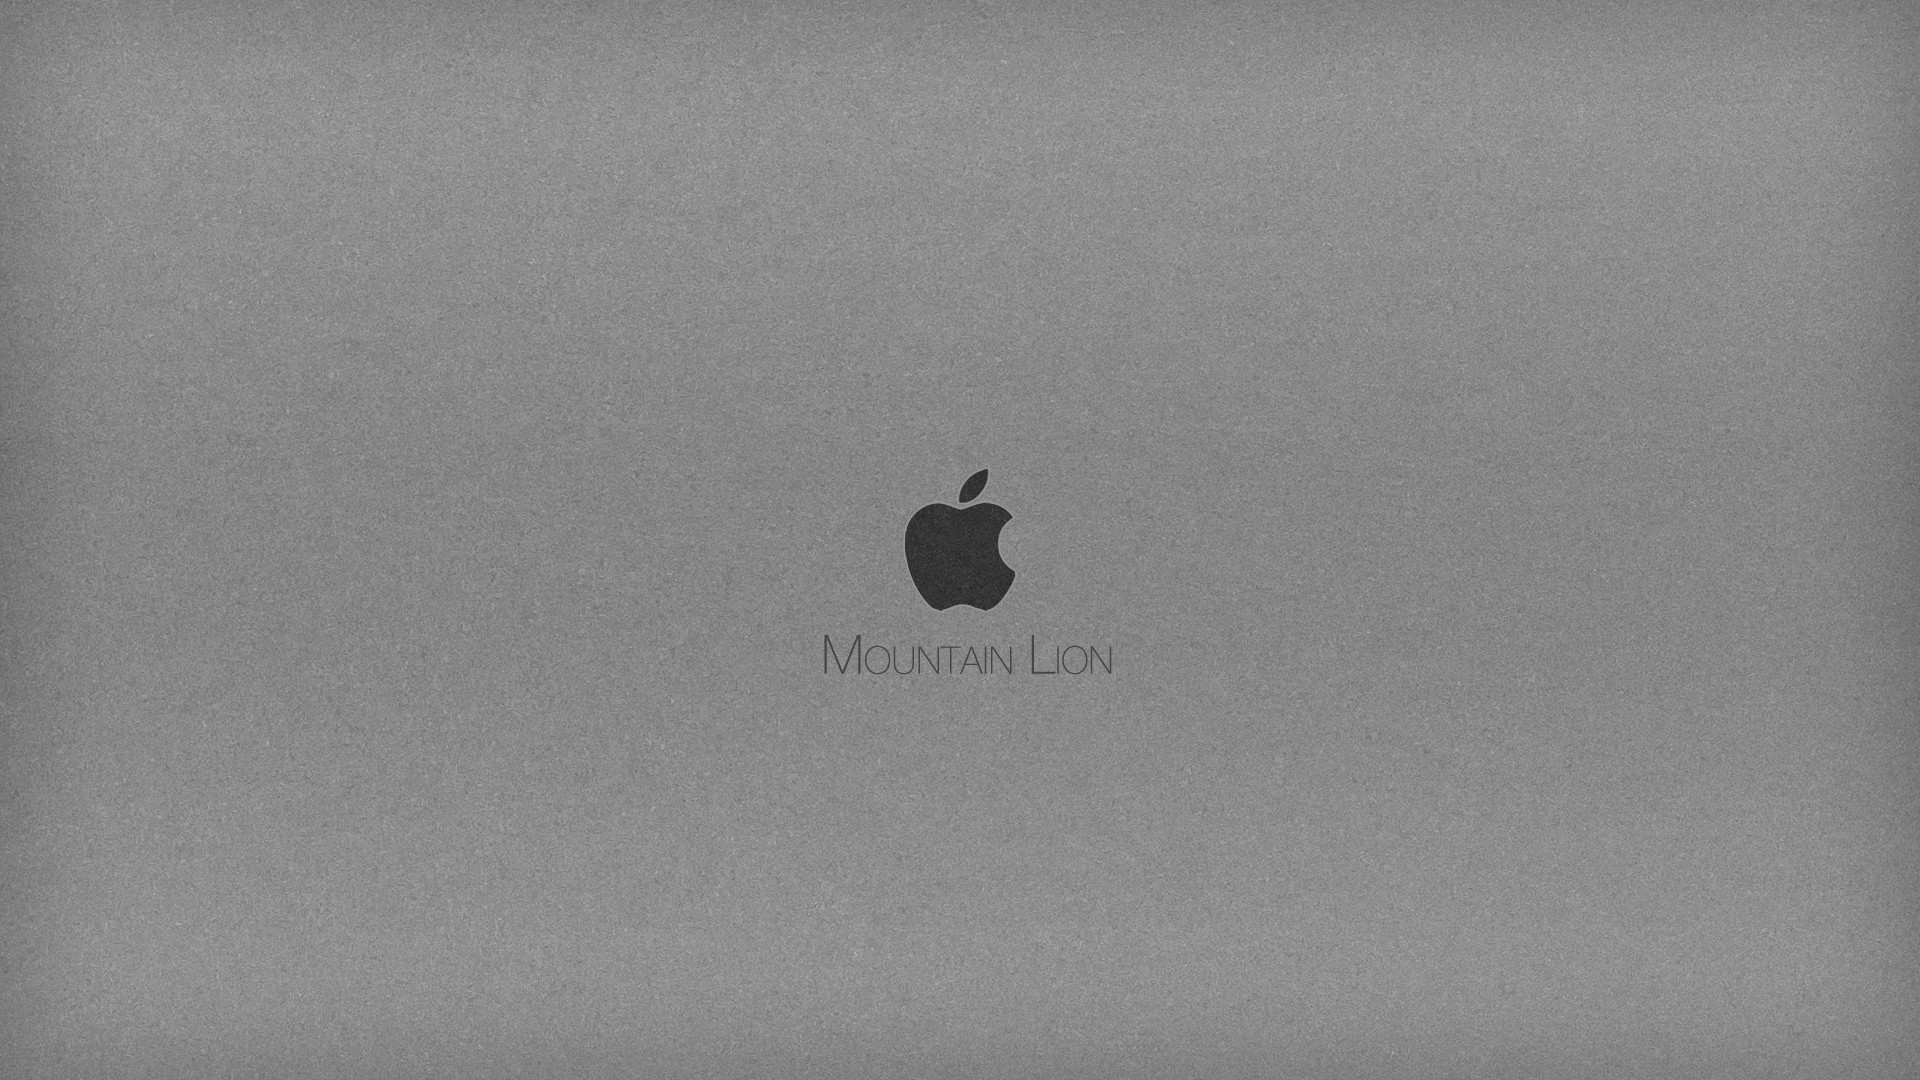 Mountain Lion 1080p Apple Wallpaper HD #7902 Wallpaper | Download ...